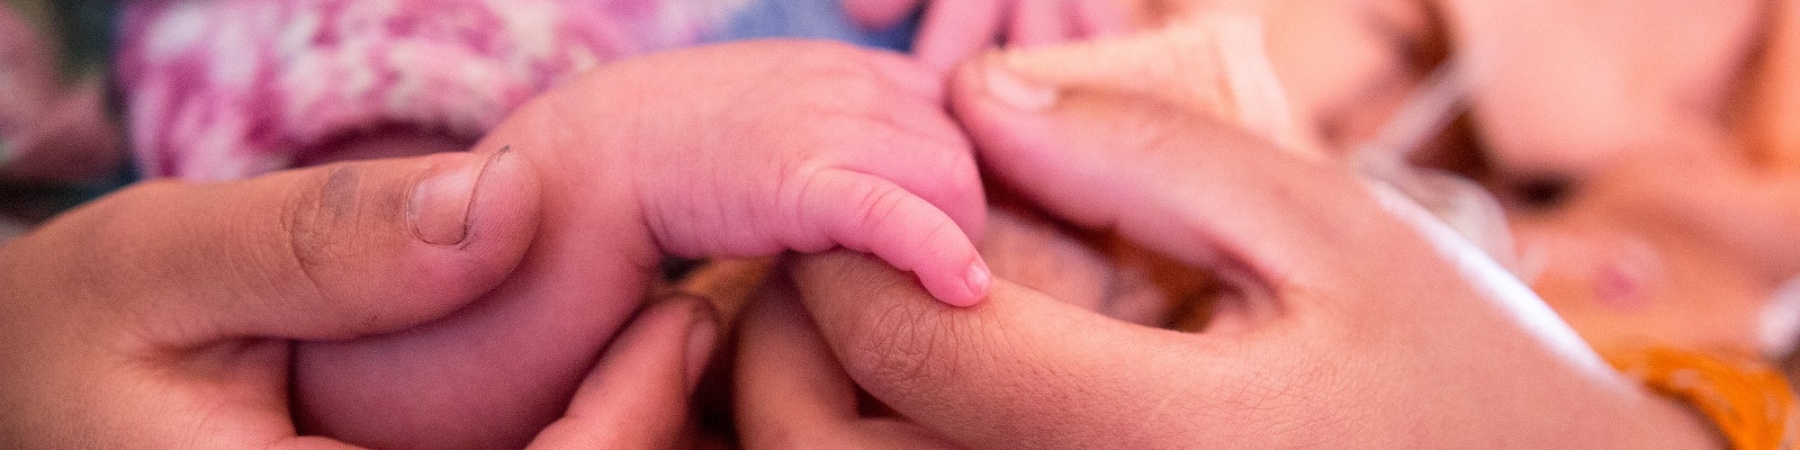 dettaglio delle mani di una mamma che tengono la mano del suo neonato